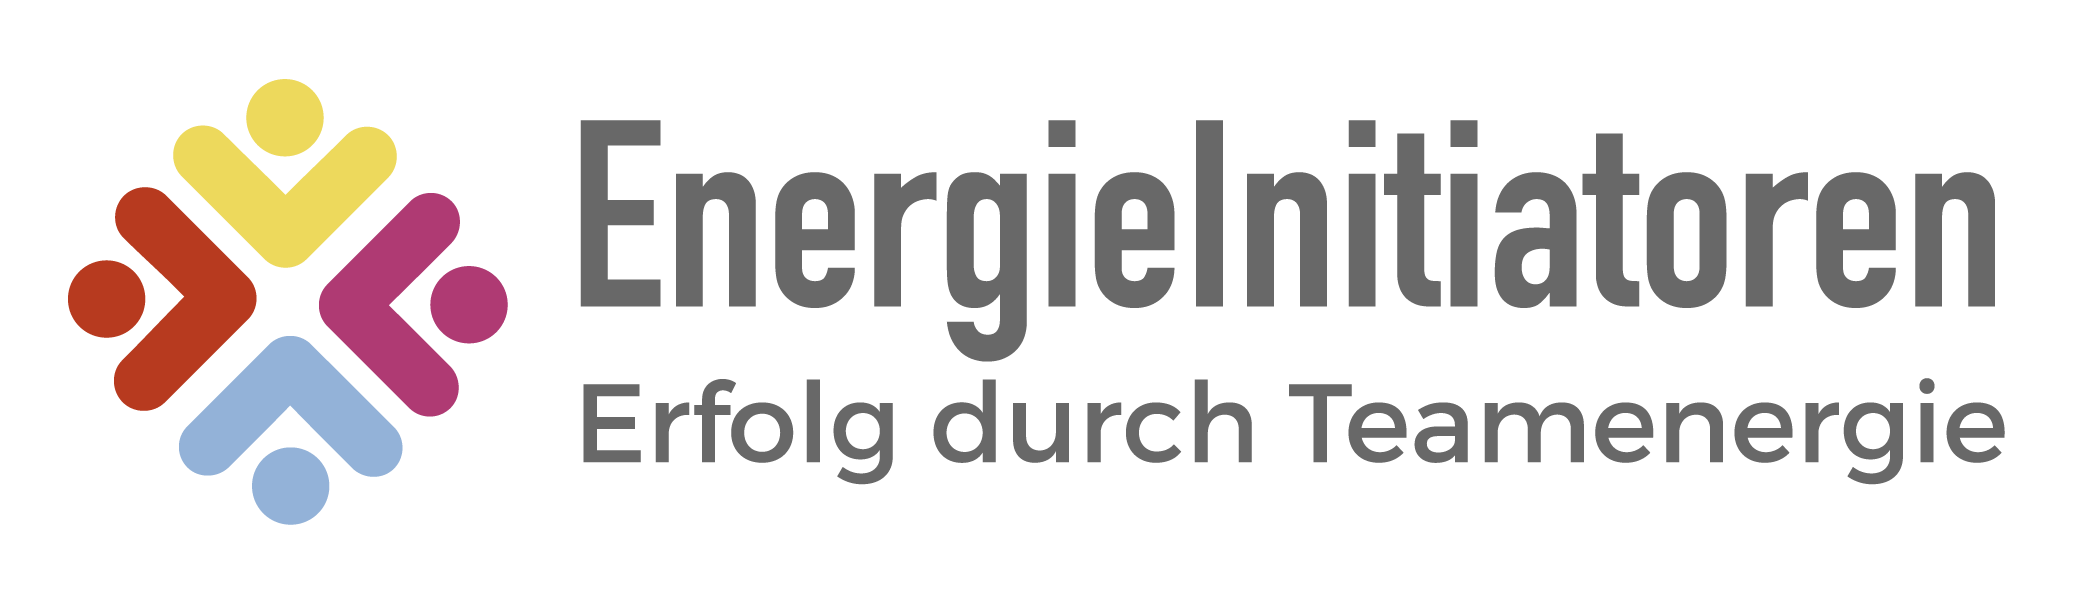 Logo EnergieIntiatoren 4 Farben